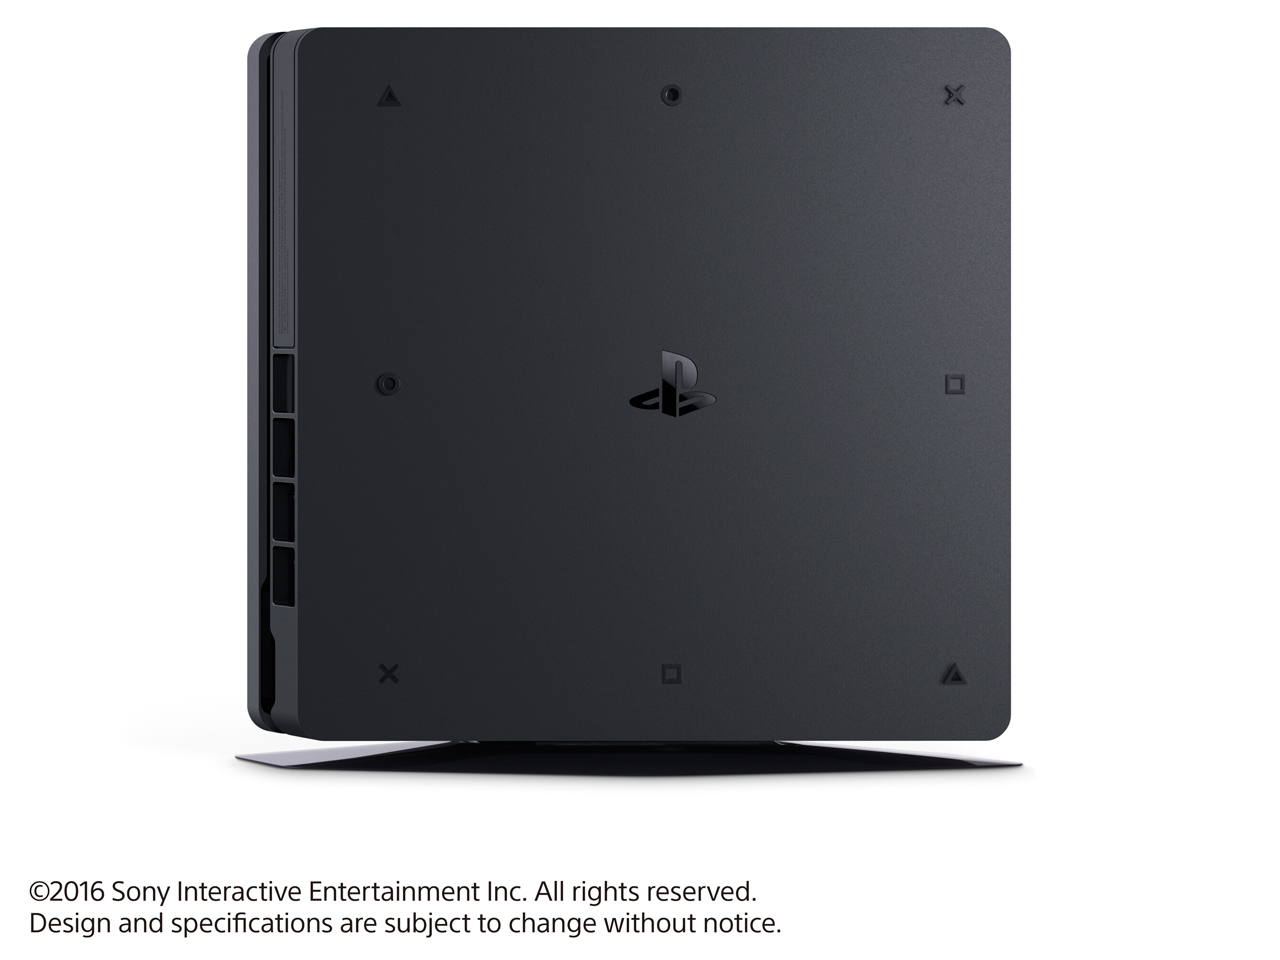 価格.com - 『本体 左側面』 プレイステーション4 HDD 500GB ジェット・ブラック CUH-2000AB01 の製品画像